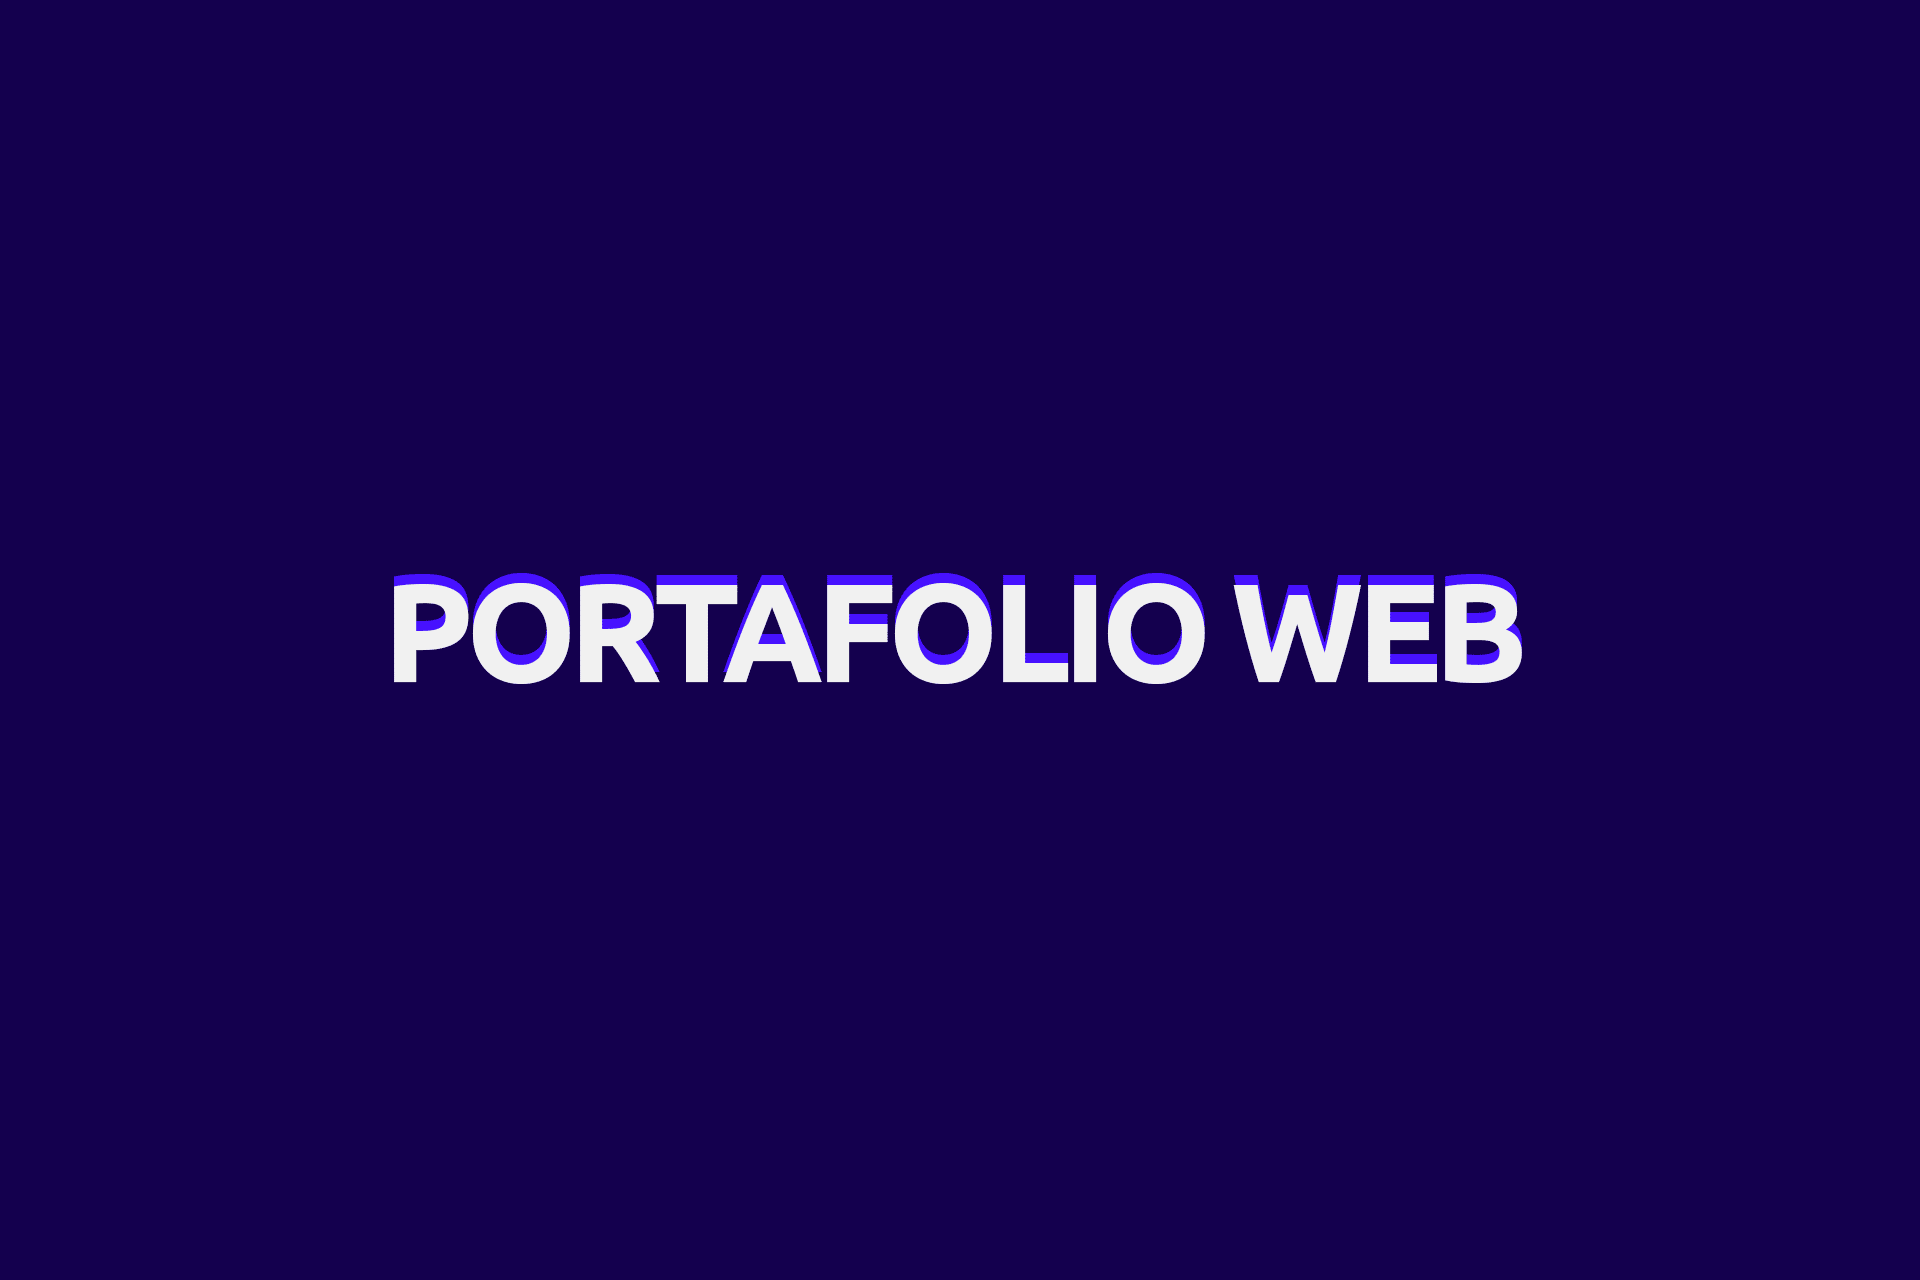 Portafolio web